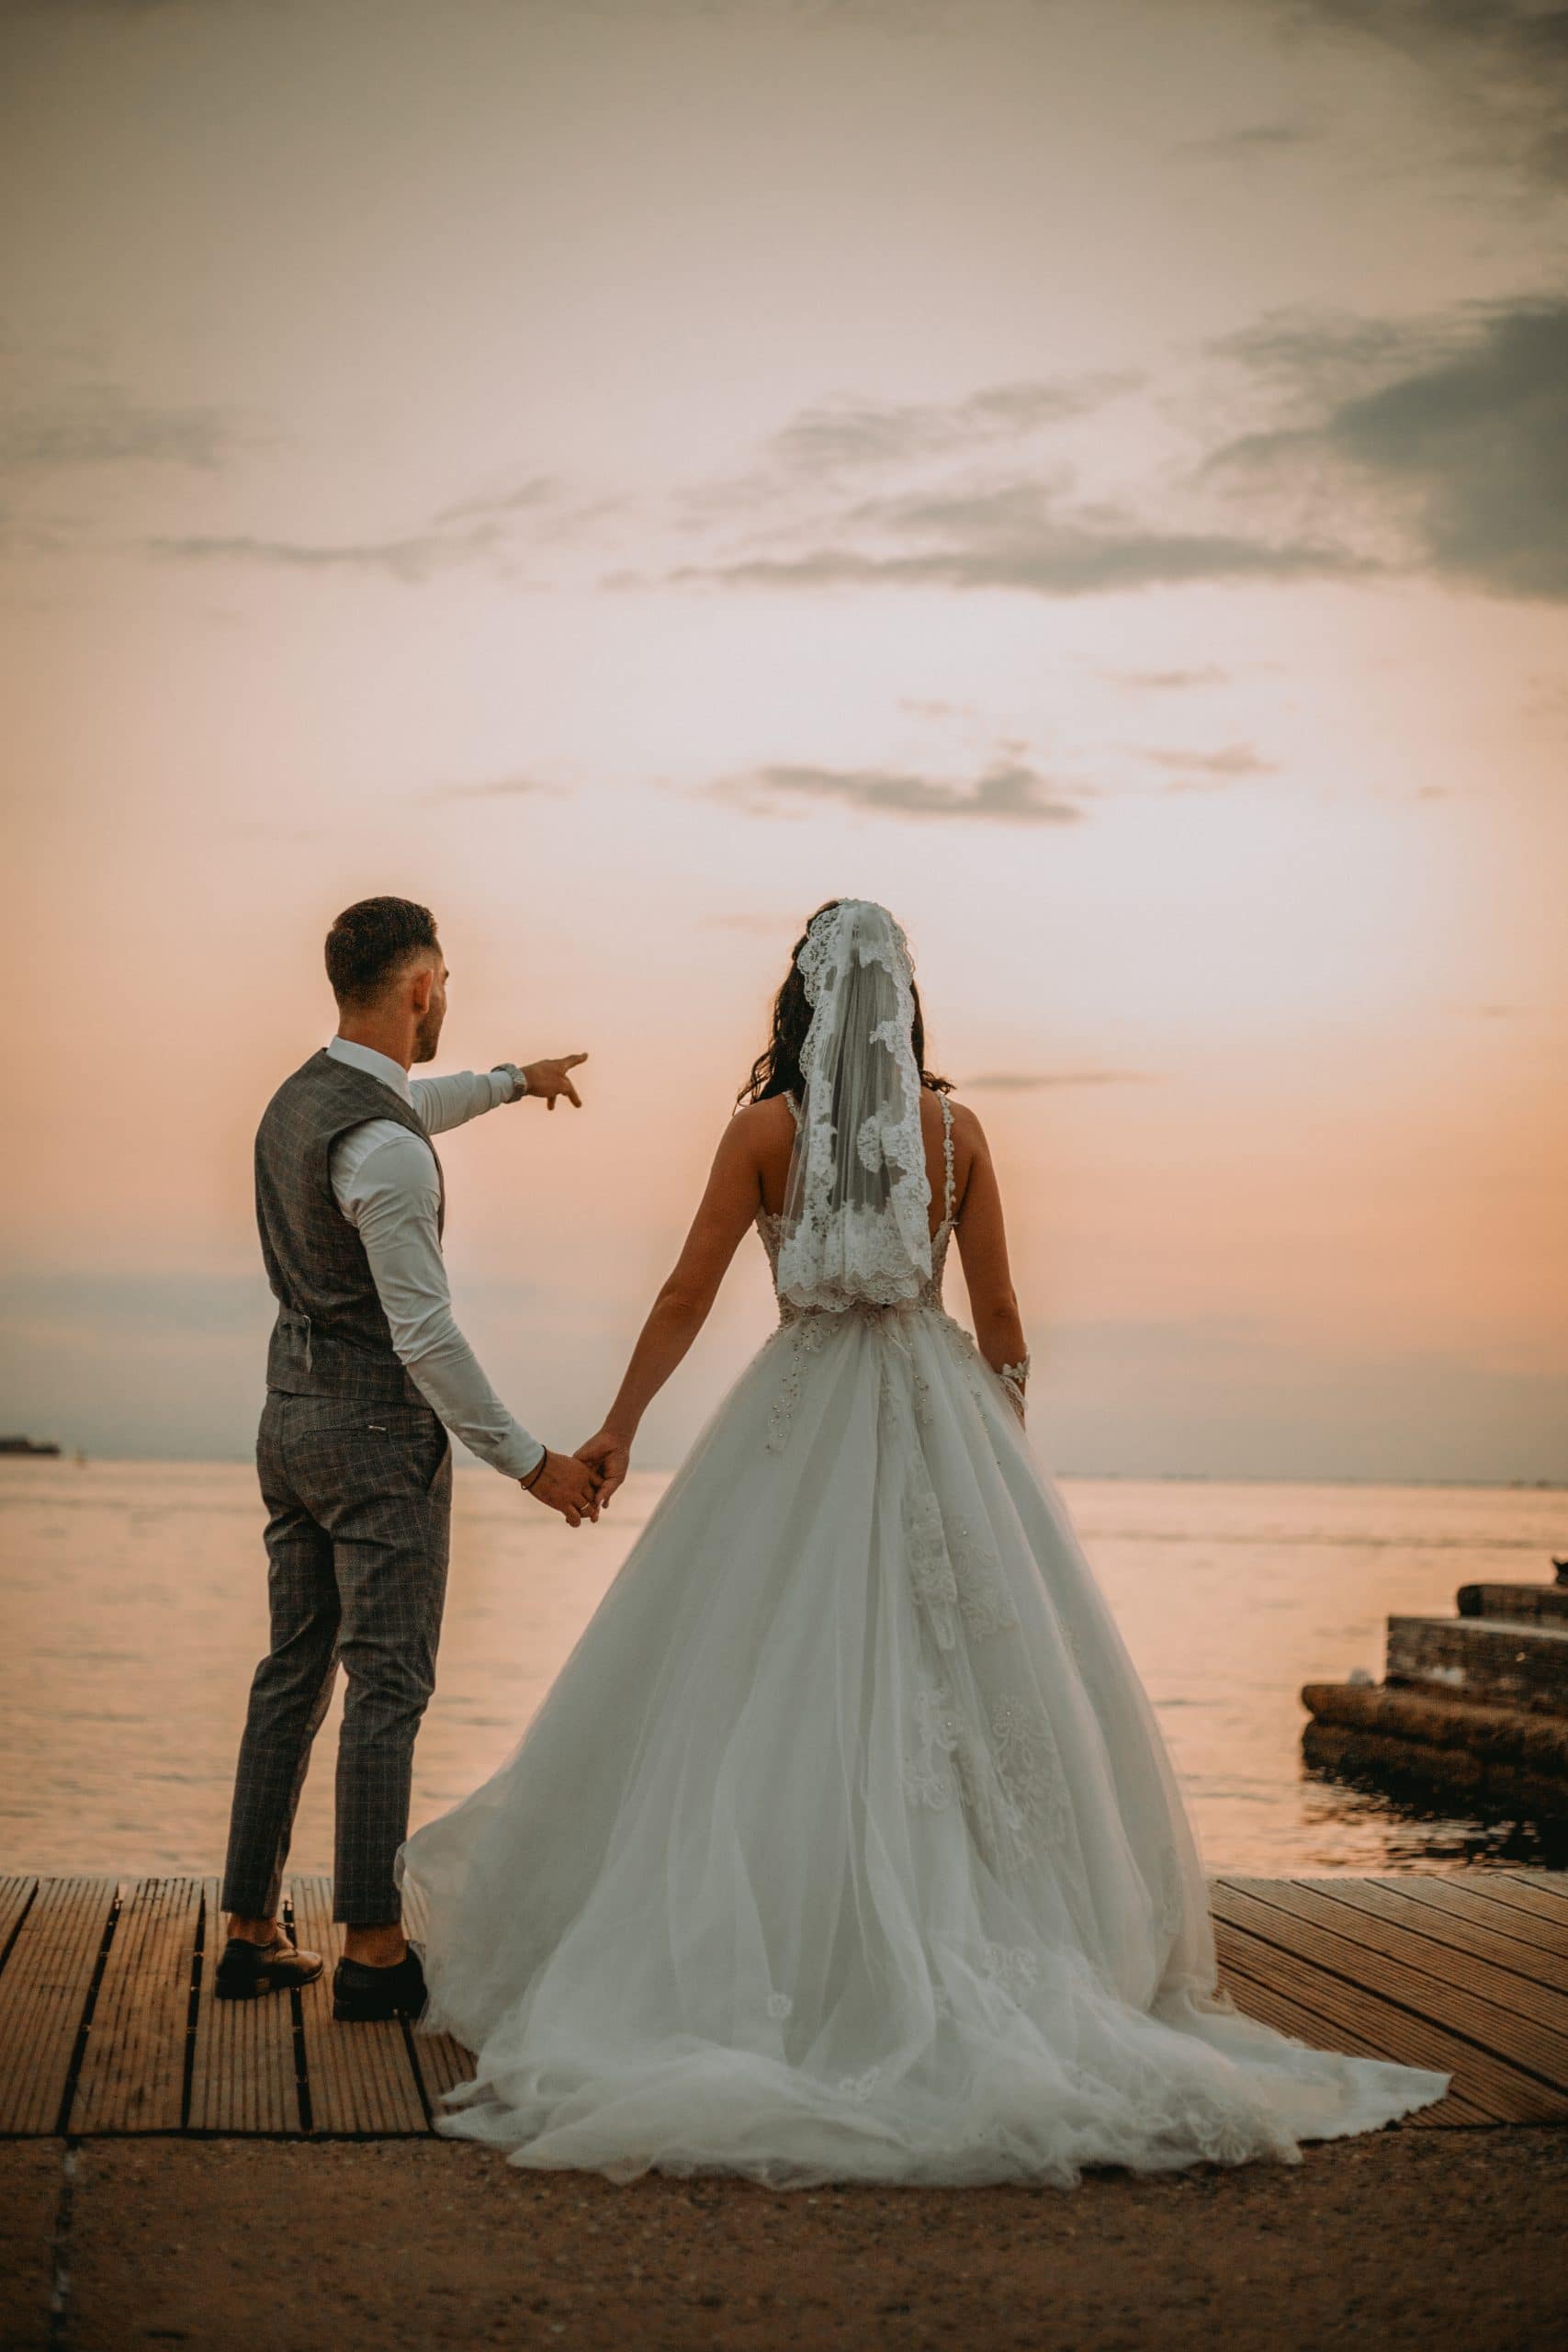 Φωτογραφία που ένα ζευγάρι αγναντεύει στον ορίζοντα και κάνει όνειρα και βλέψεις για το μέλλον.Ο γαμπρός φοράει γκρι κοστούμι και η νύφη ενα λευκό νυφικό με πέπλο η λήψη έγινε απο τον φωτογράφο γάμου Καρασαββίδη Γιώργο στην Νέα Παραλία Θεσσαλονίκης την ώρα του ηλιοβασιλέματος σε μια ρομαντική ατμόσφαιρα